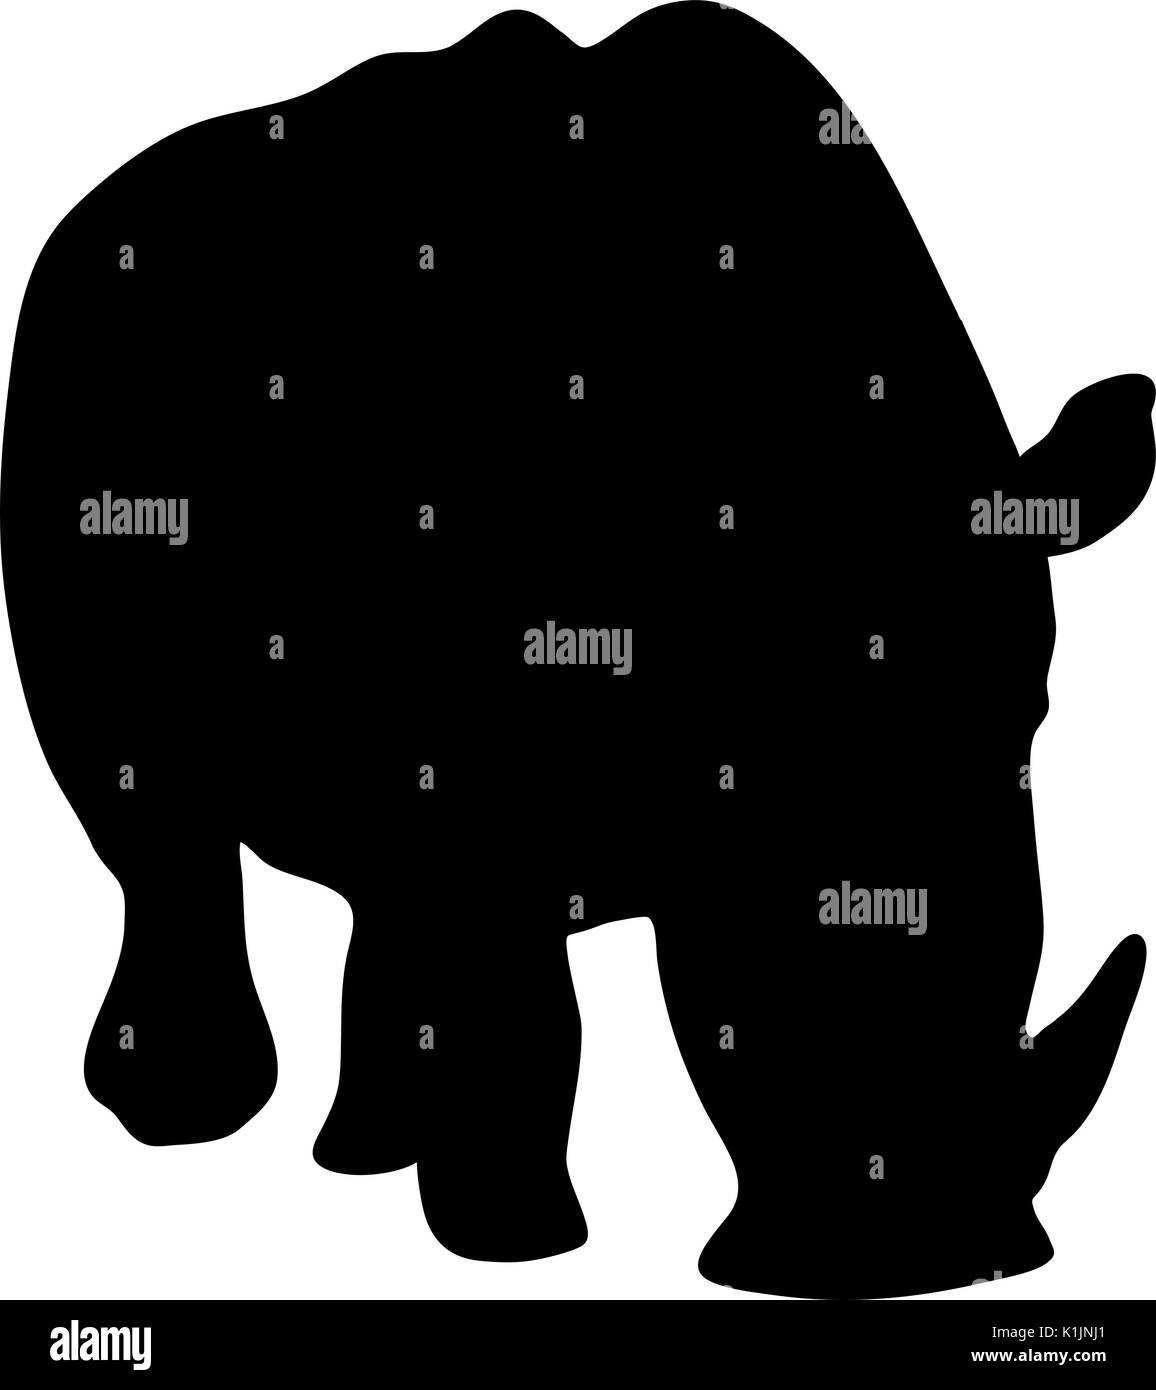 Vue sur les silhouettes d'un rhinocéros Illustration de Vecteur